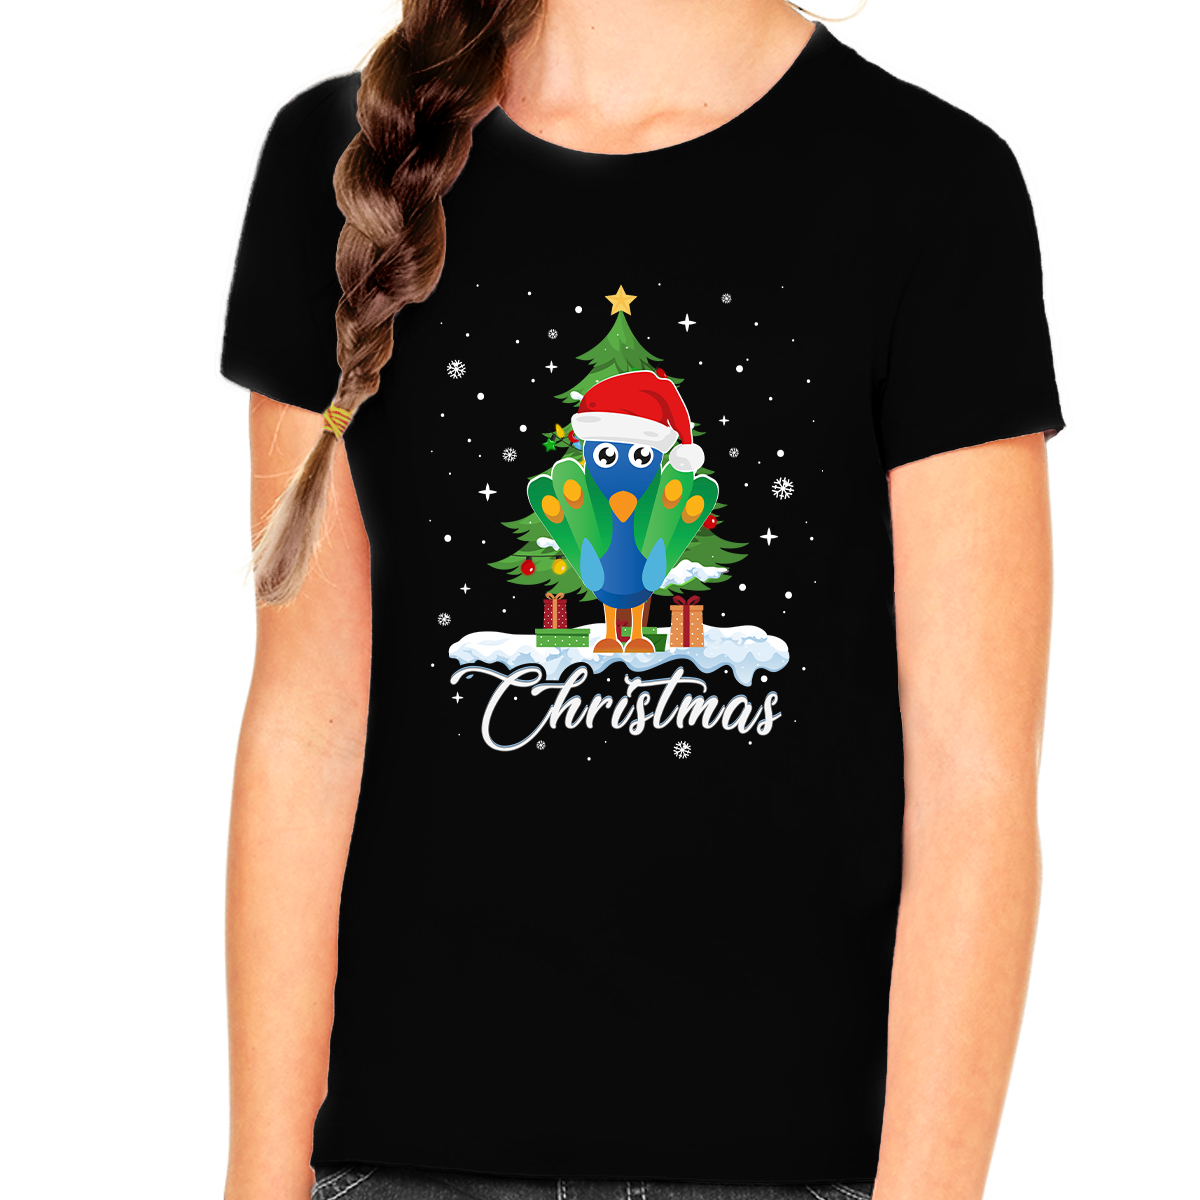 Girls Christmas Shirt Christmas Shirt for Girls Santa Peacock Christmas Shirts for Kids